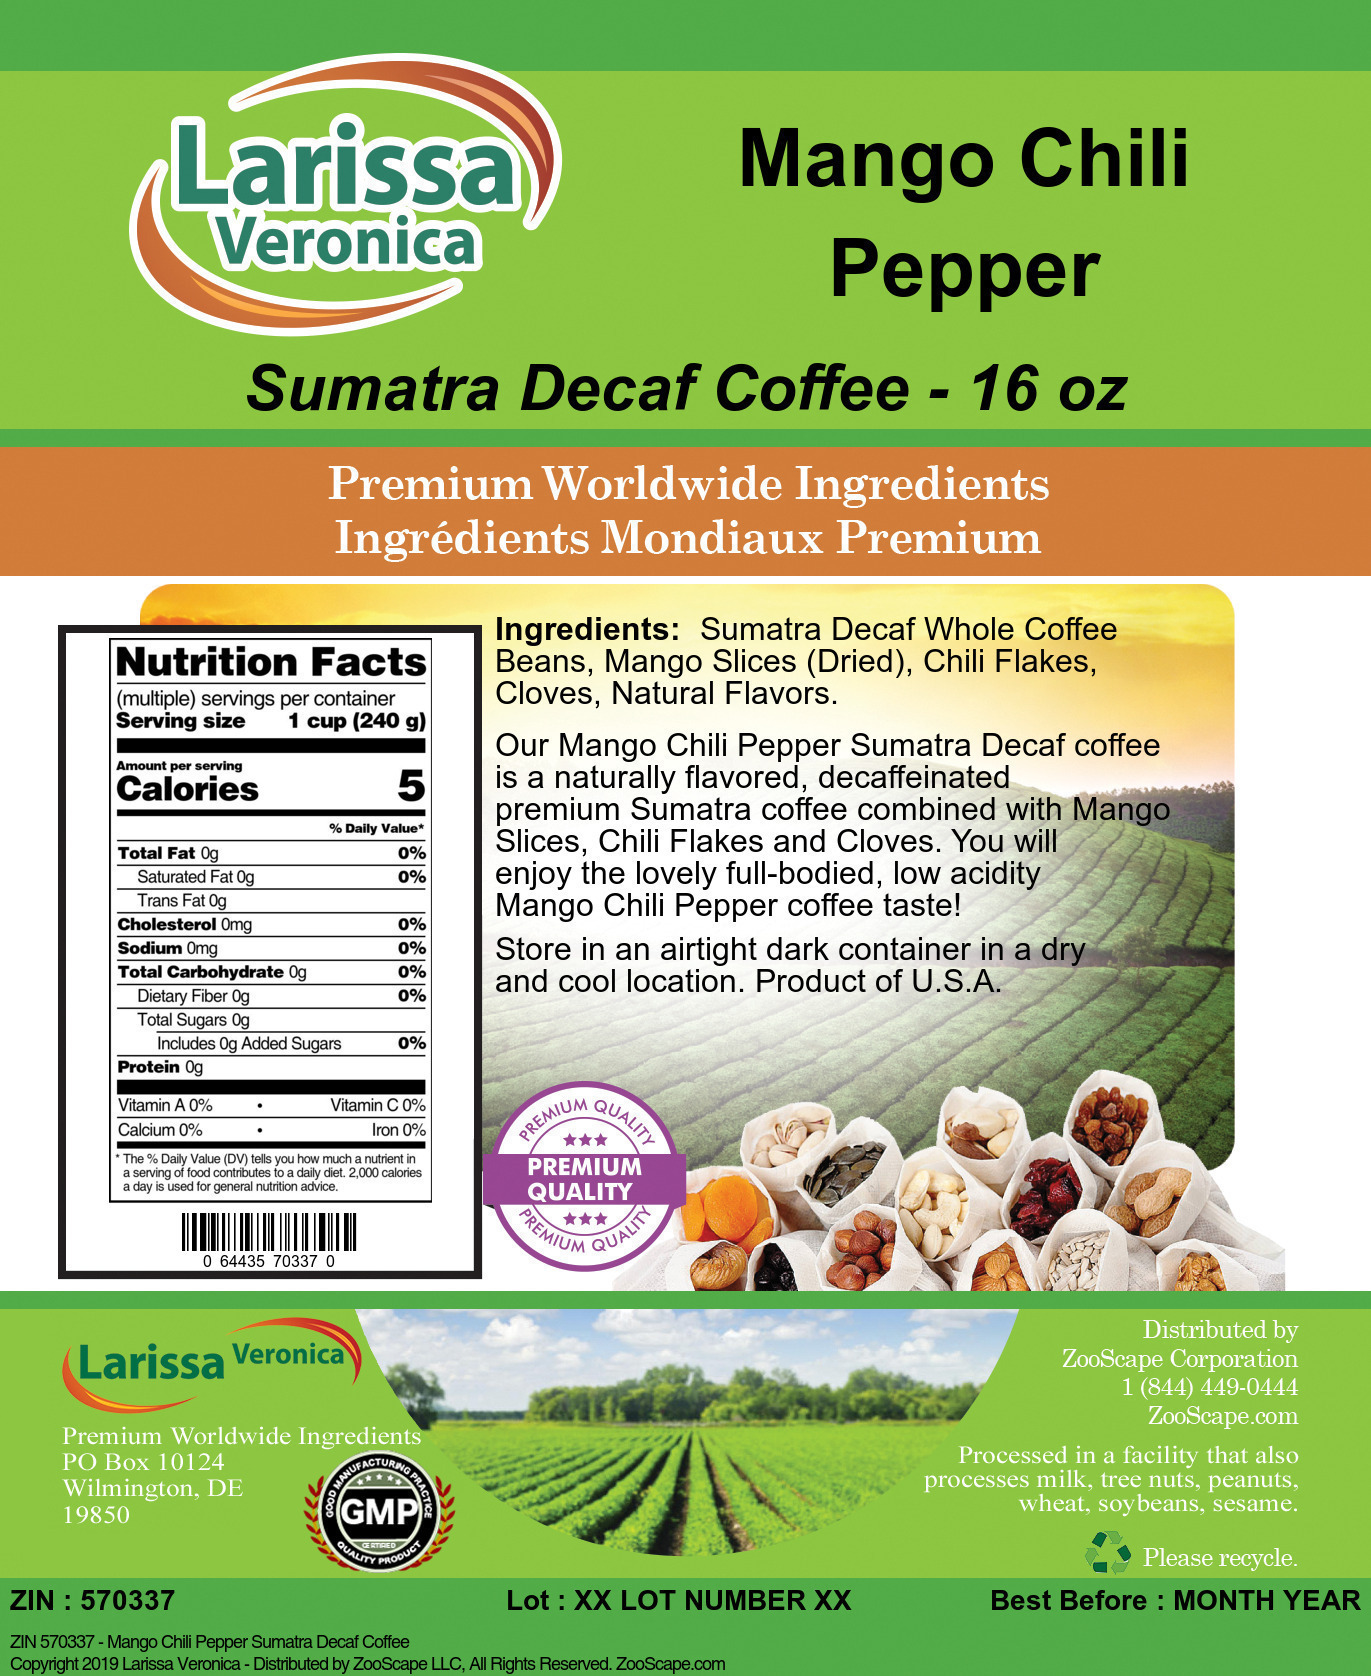 Mango Chili Pepper Sumatra Decaf Coffee - Label